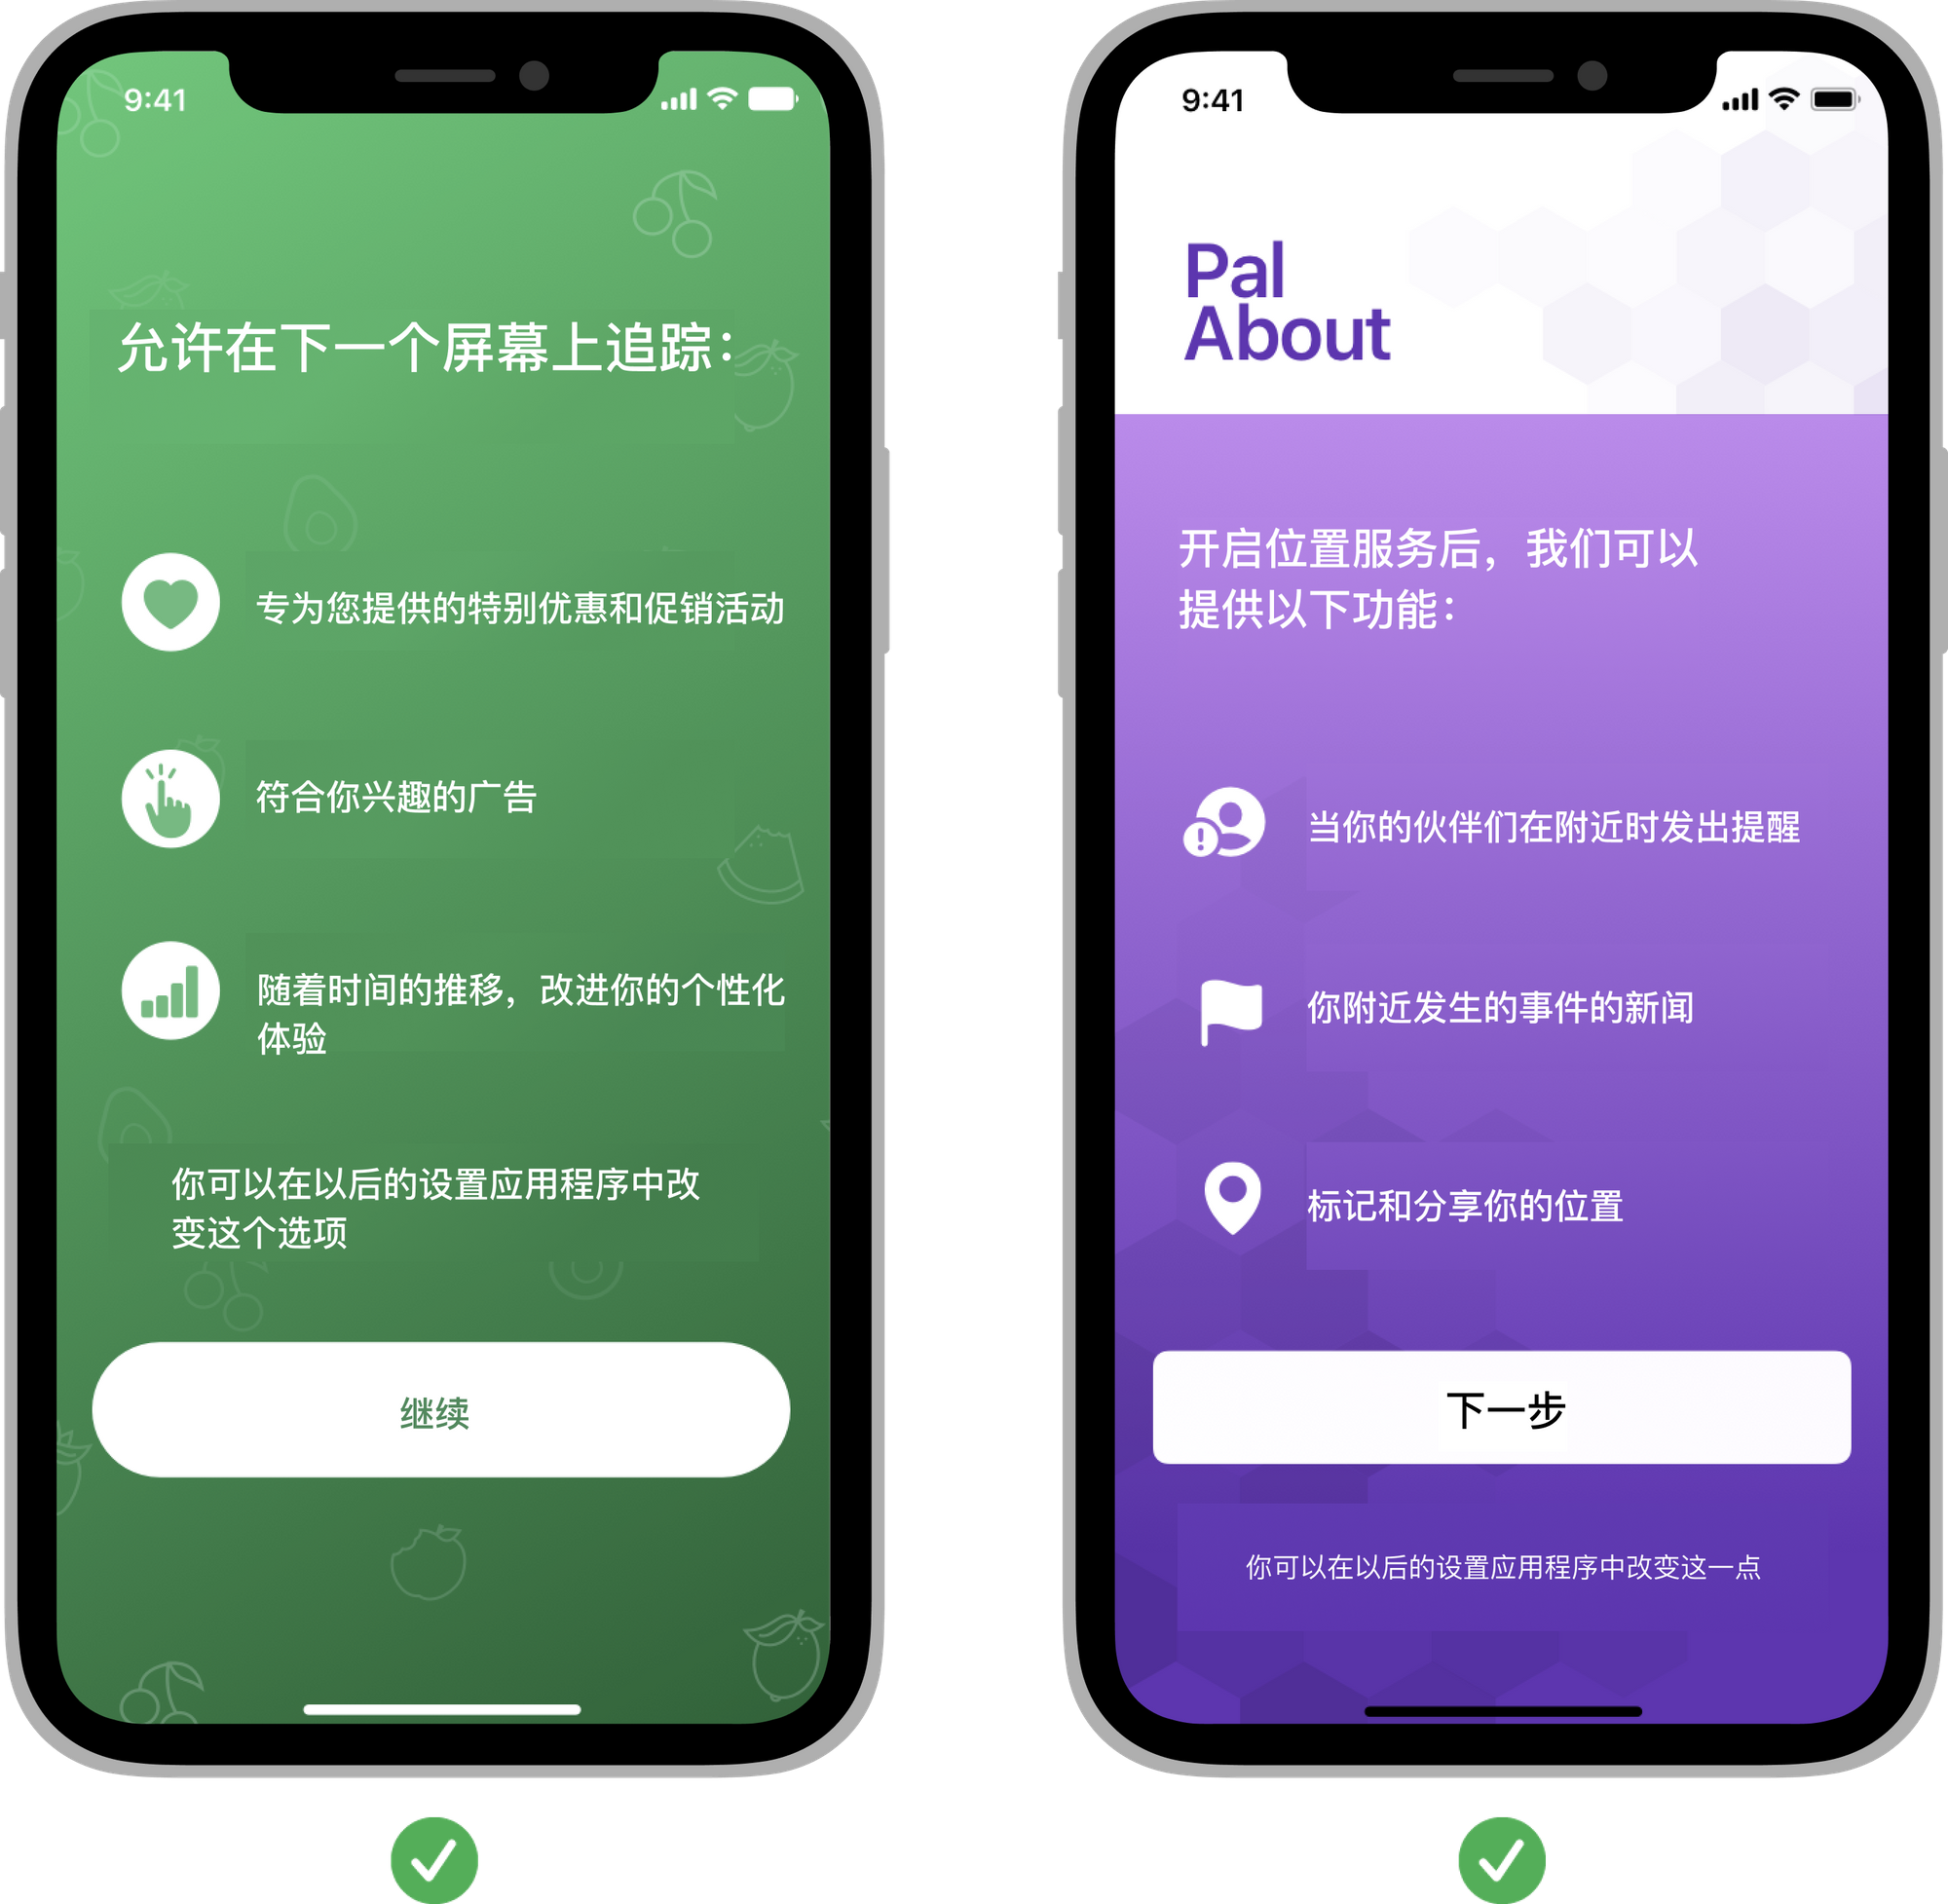 【译文】iOS 人机界面指南-访问用户数据